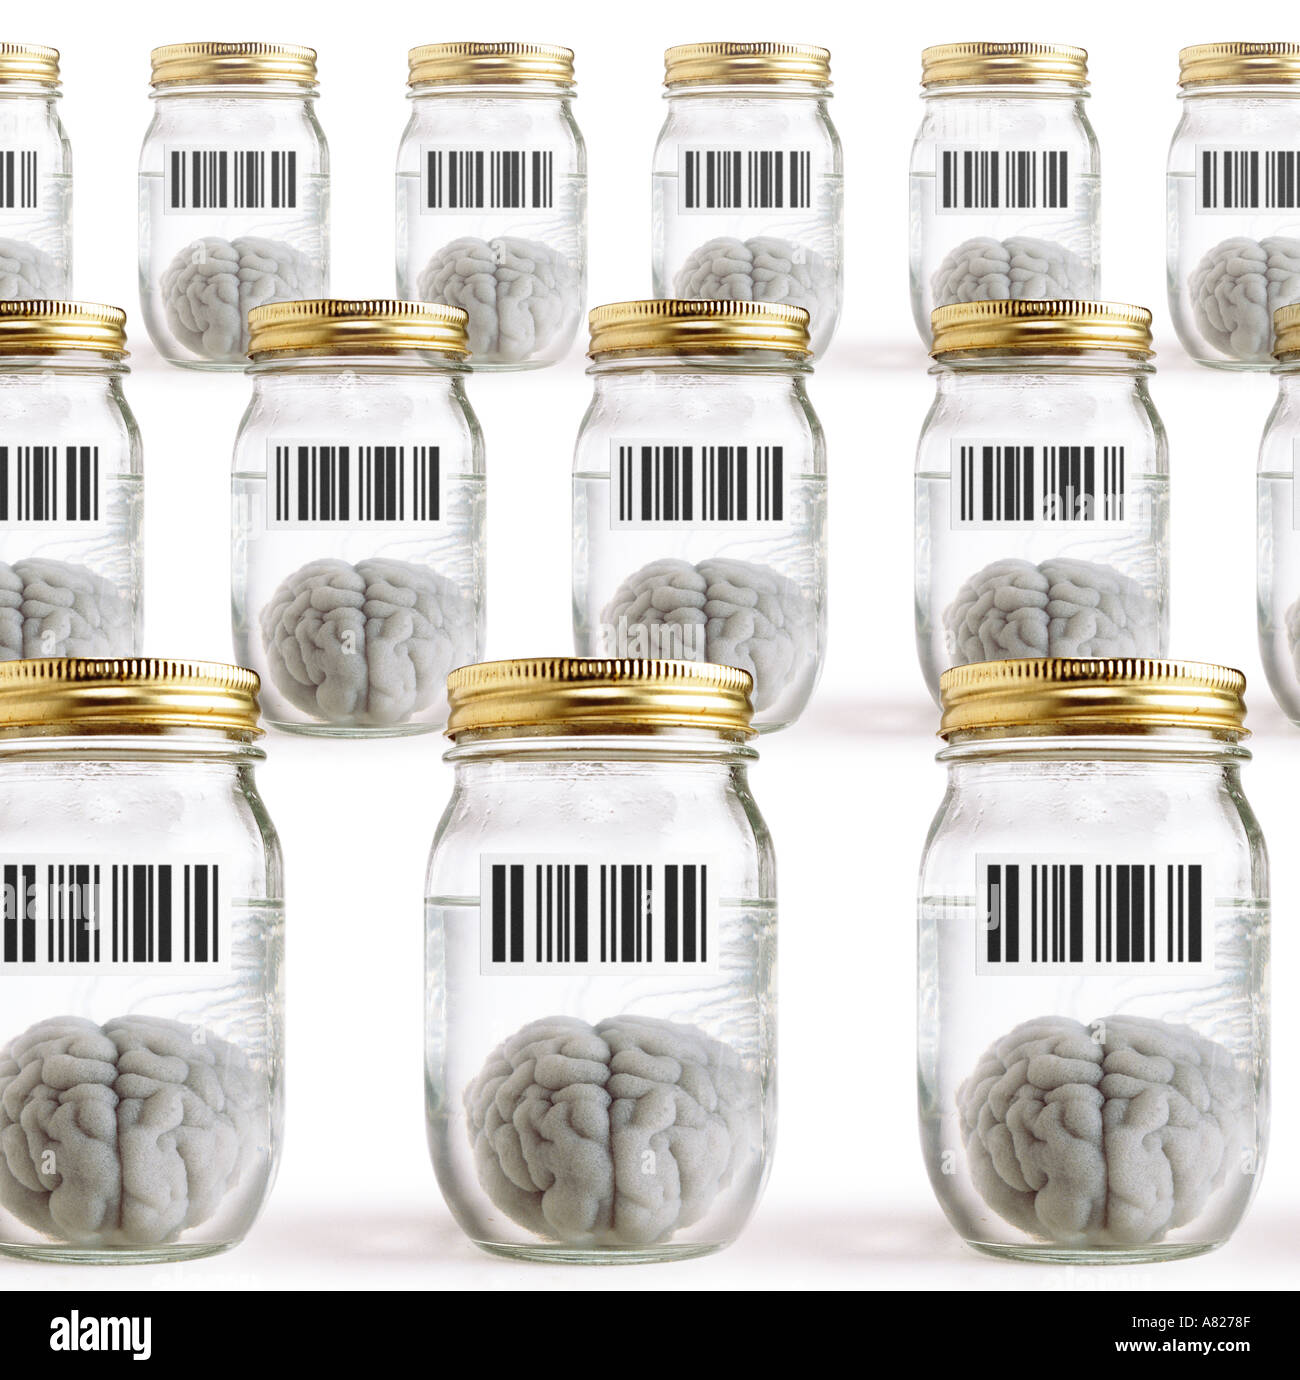 Gehirne in Gläsern mit barcodes Stockfoto